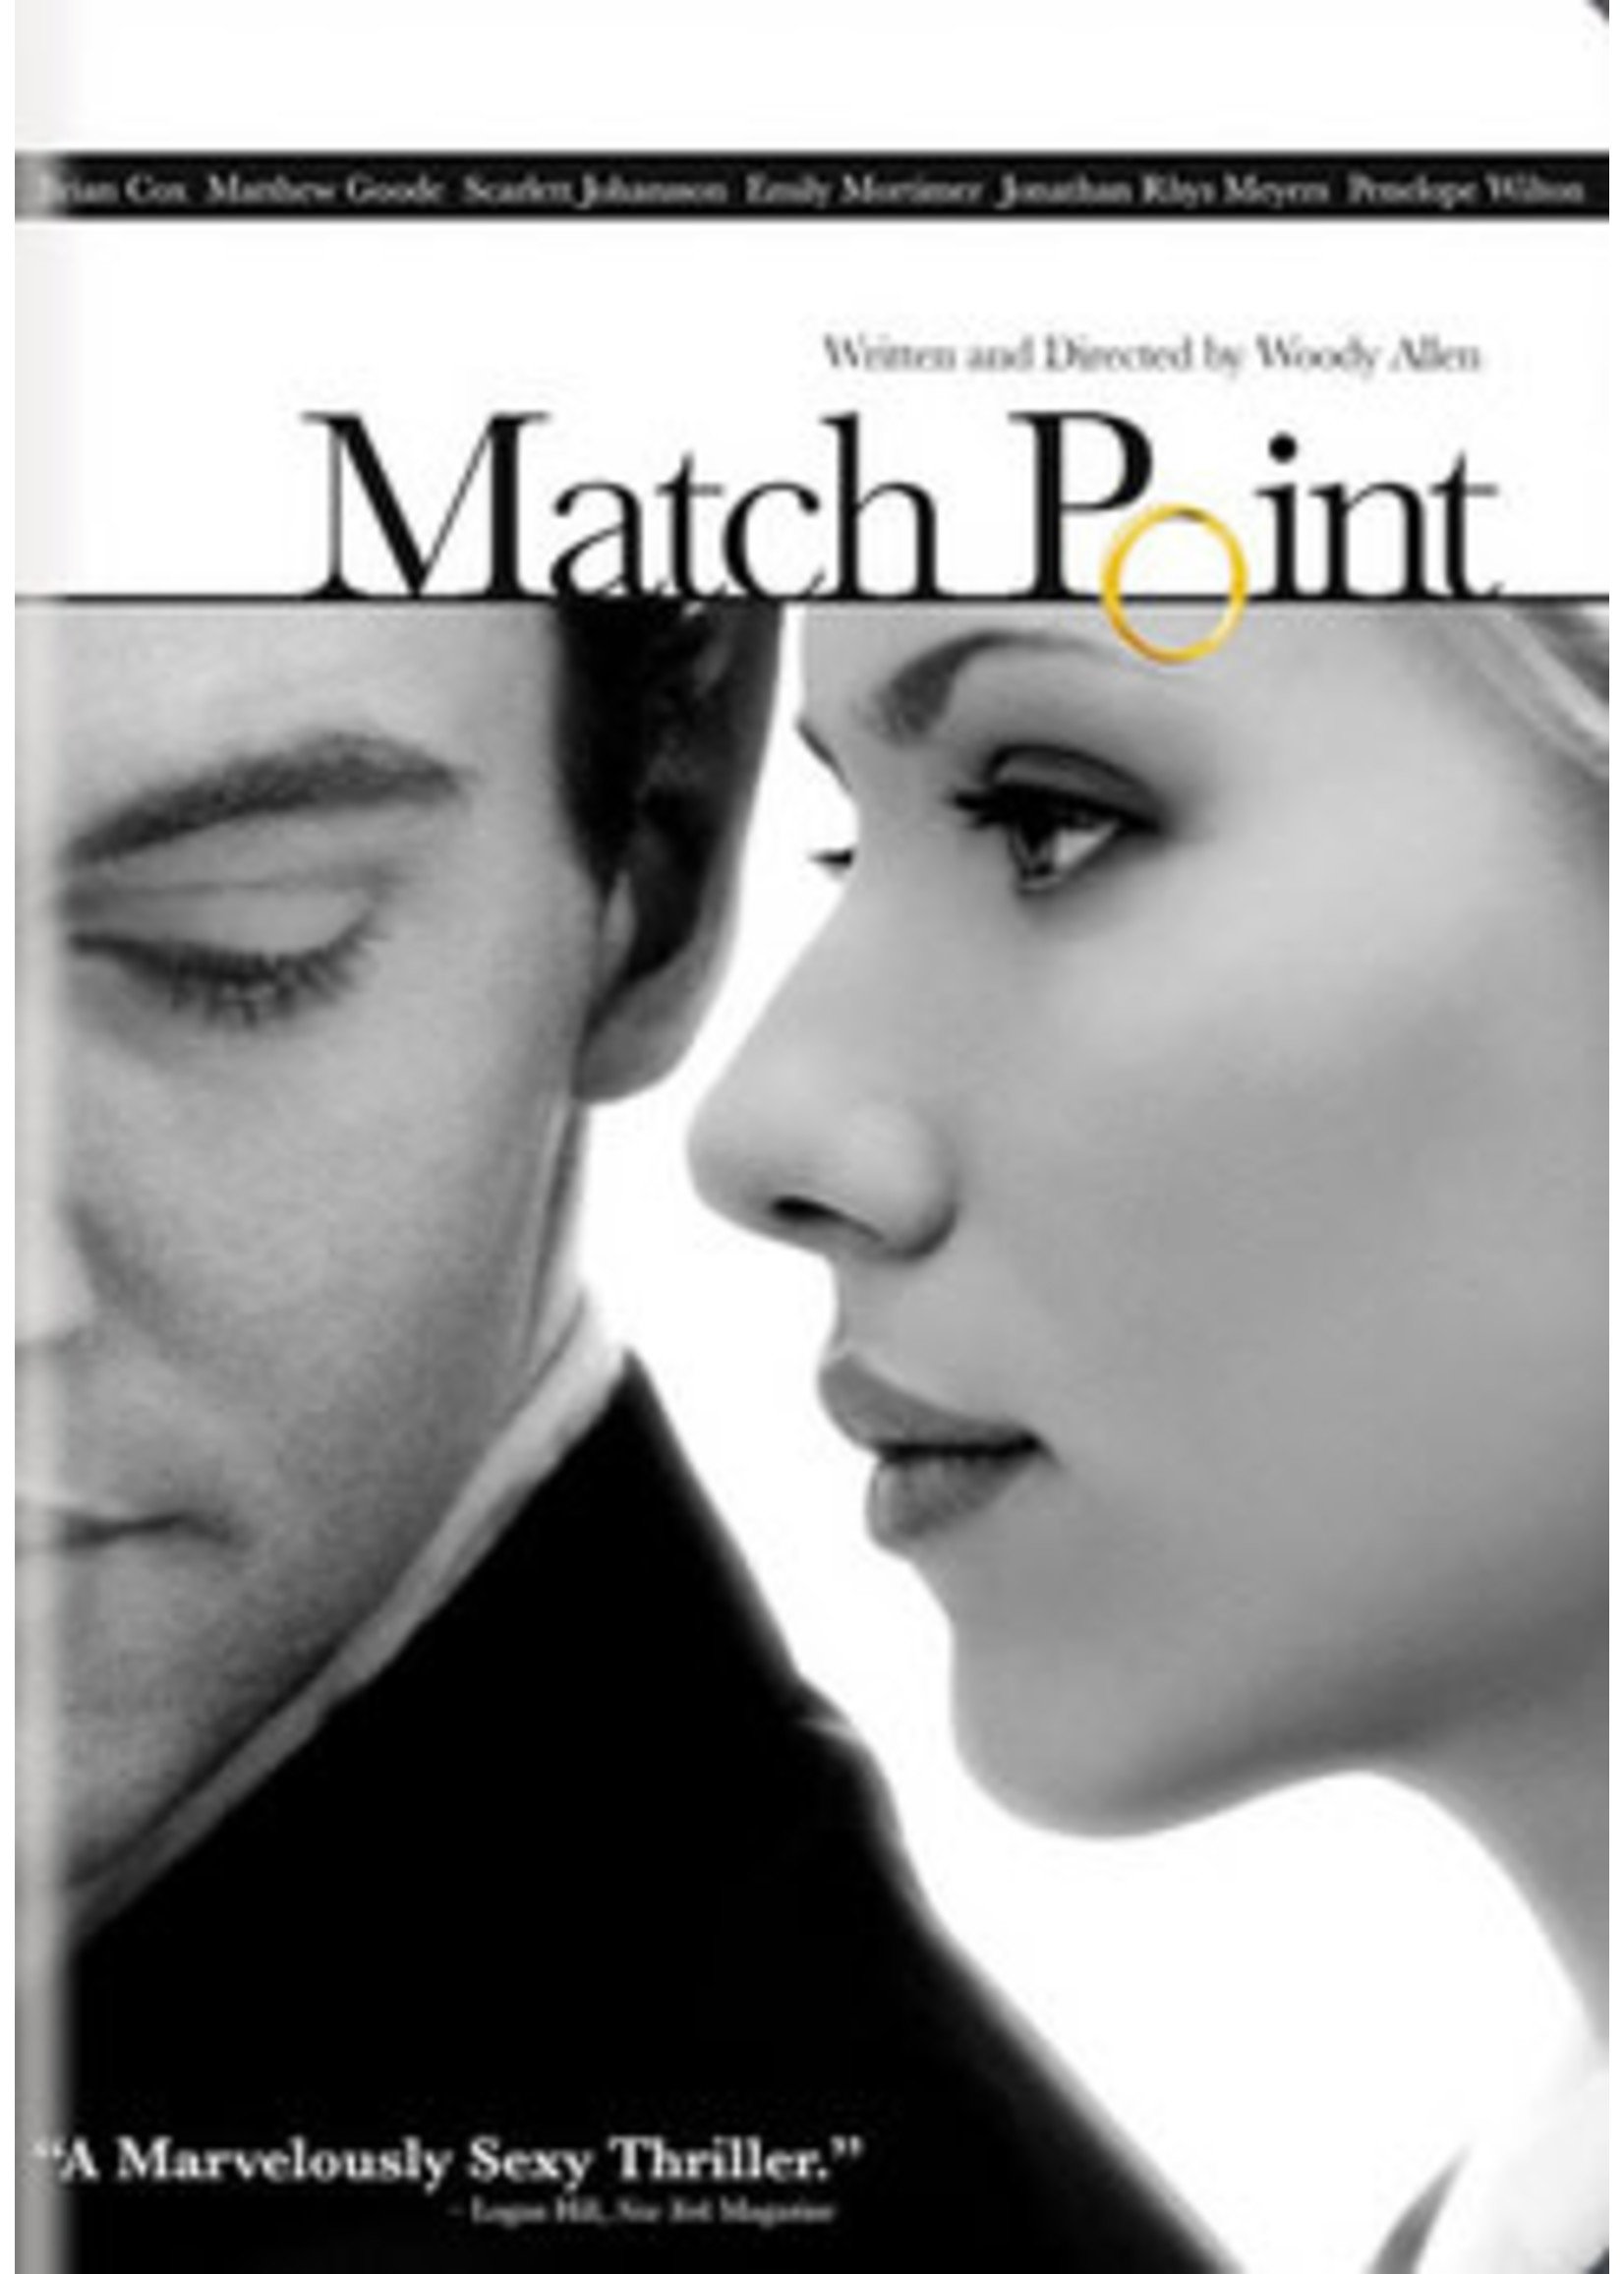 Match Point DVD